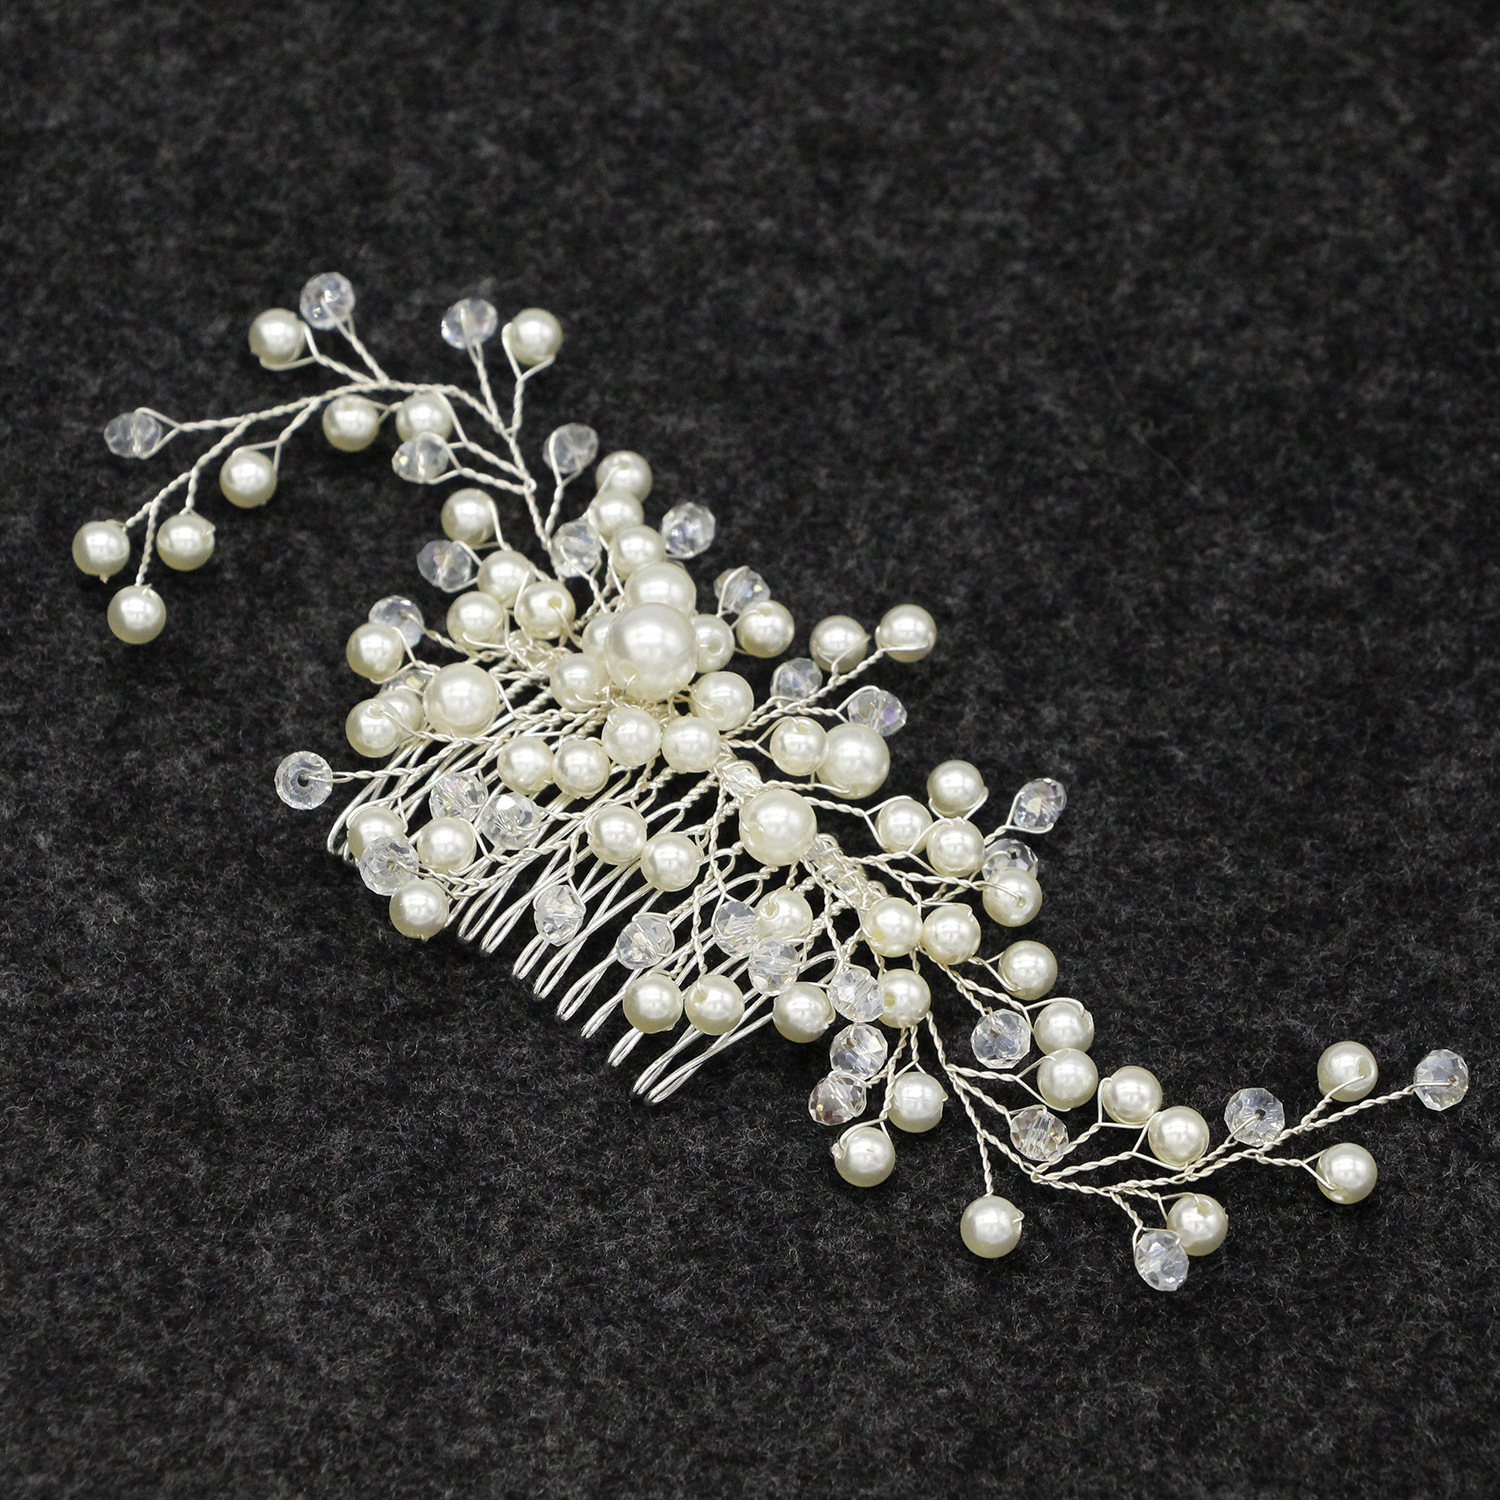 欧式新娘头饰发箍影楼跟妆发饰 手工镶钻花朵白色叶子软链发带-阿里巴巴